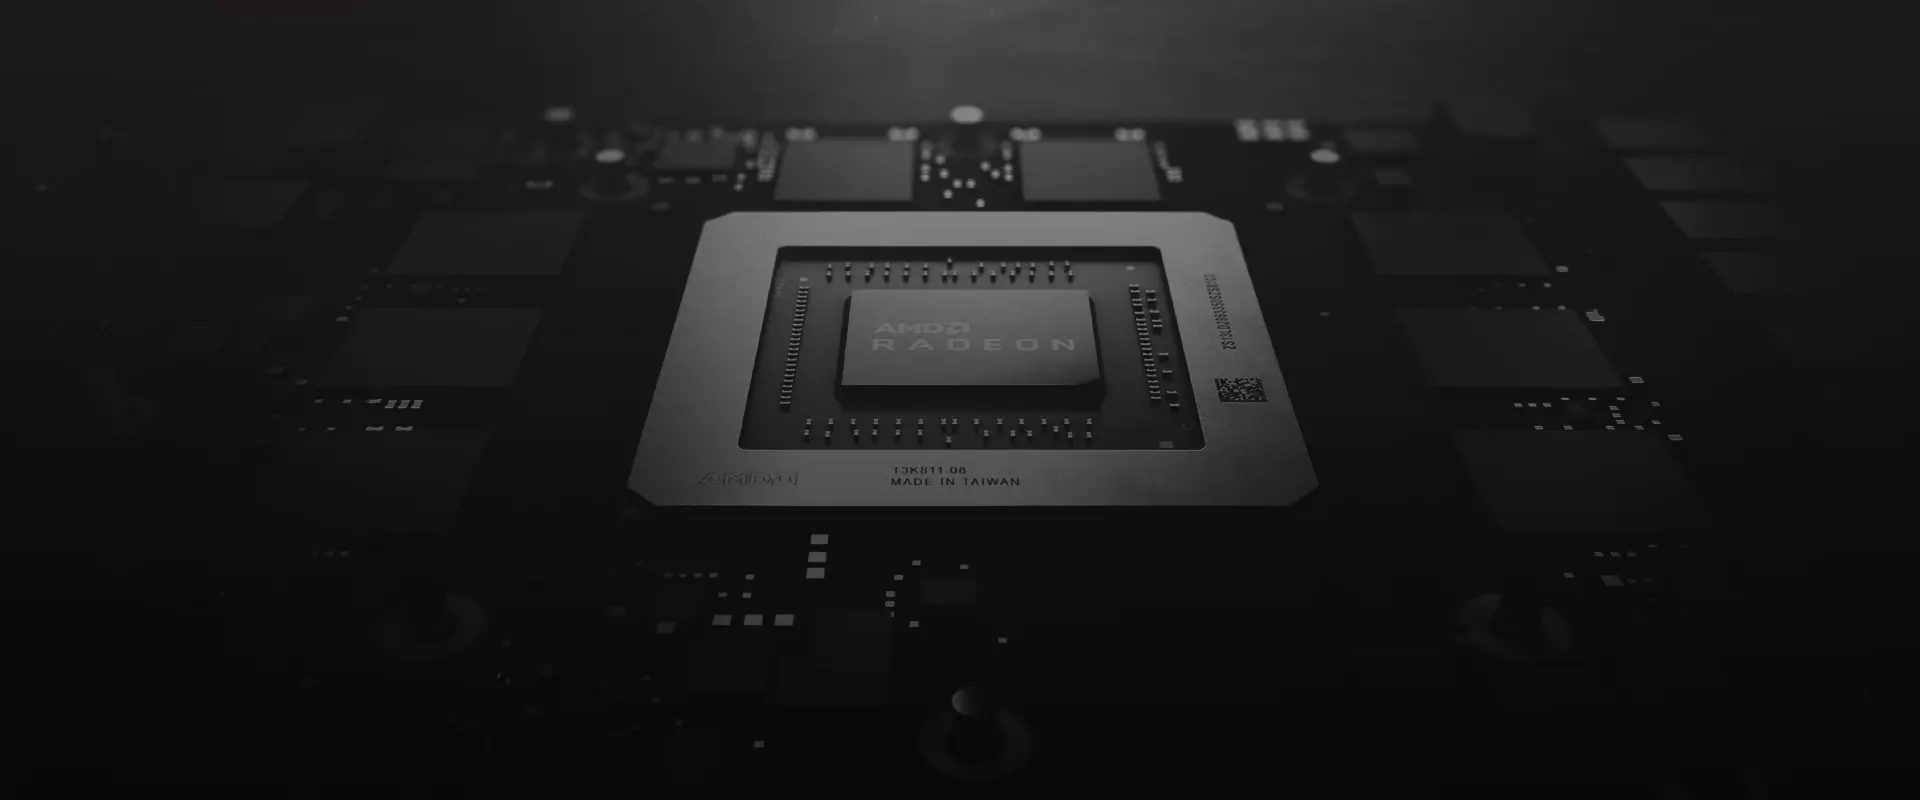 80 CU tömbbel rendelkezhet az AMD NAVI 21-es GPU-ja?